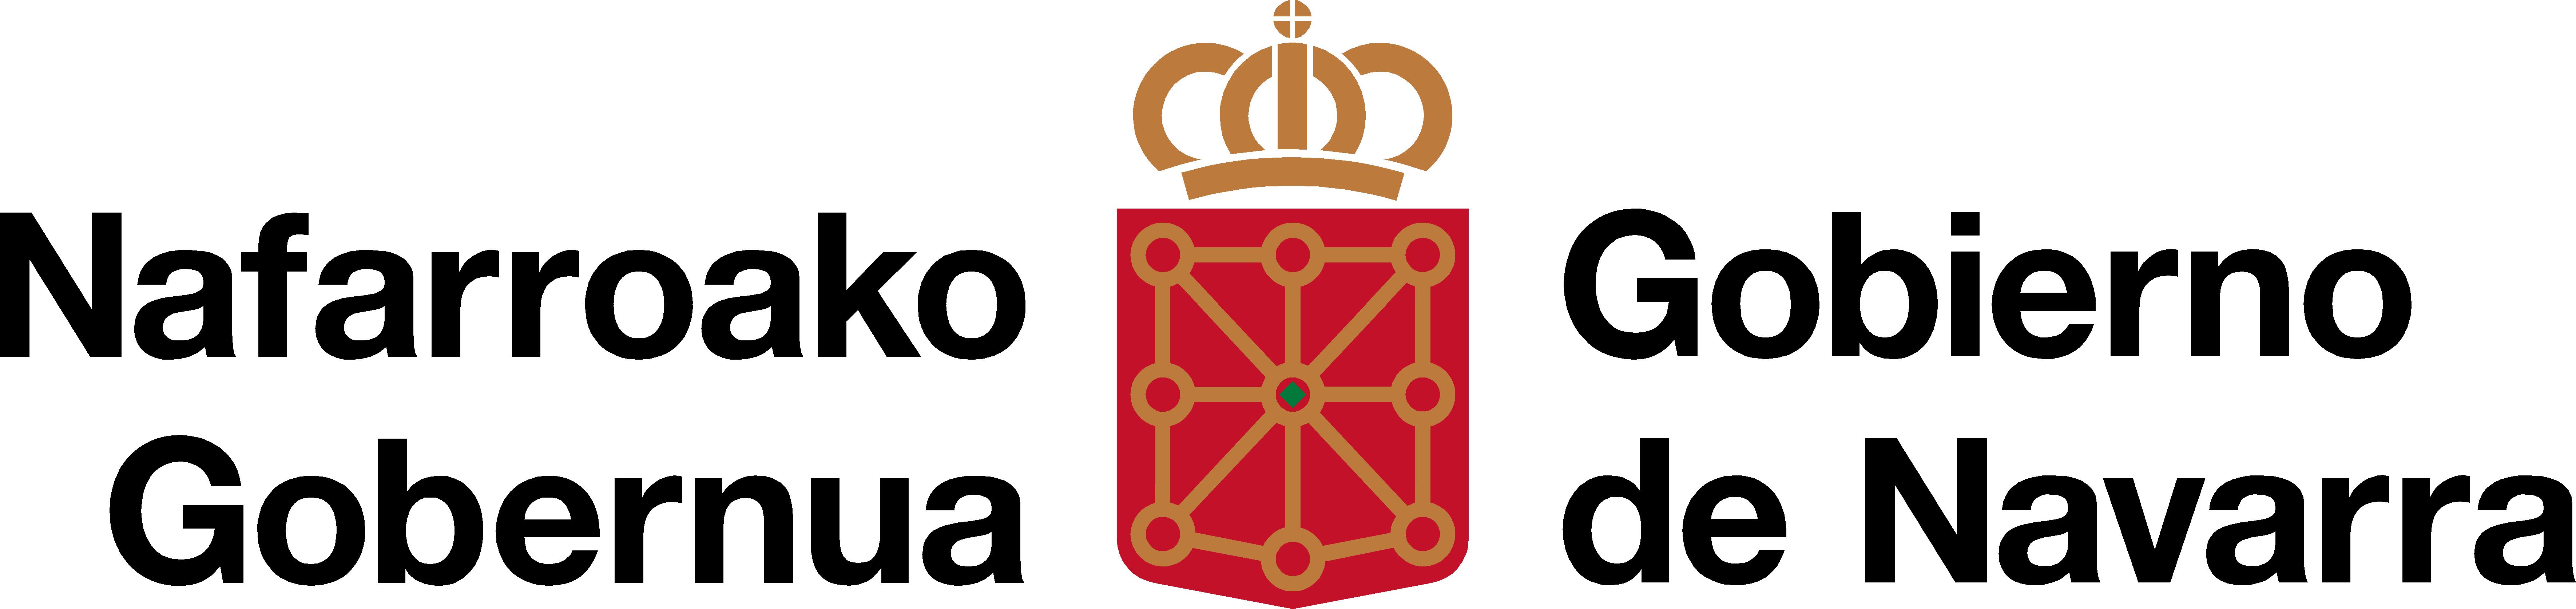 Nafarroako Gobernua - Euskarabidea